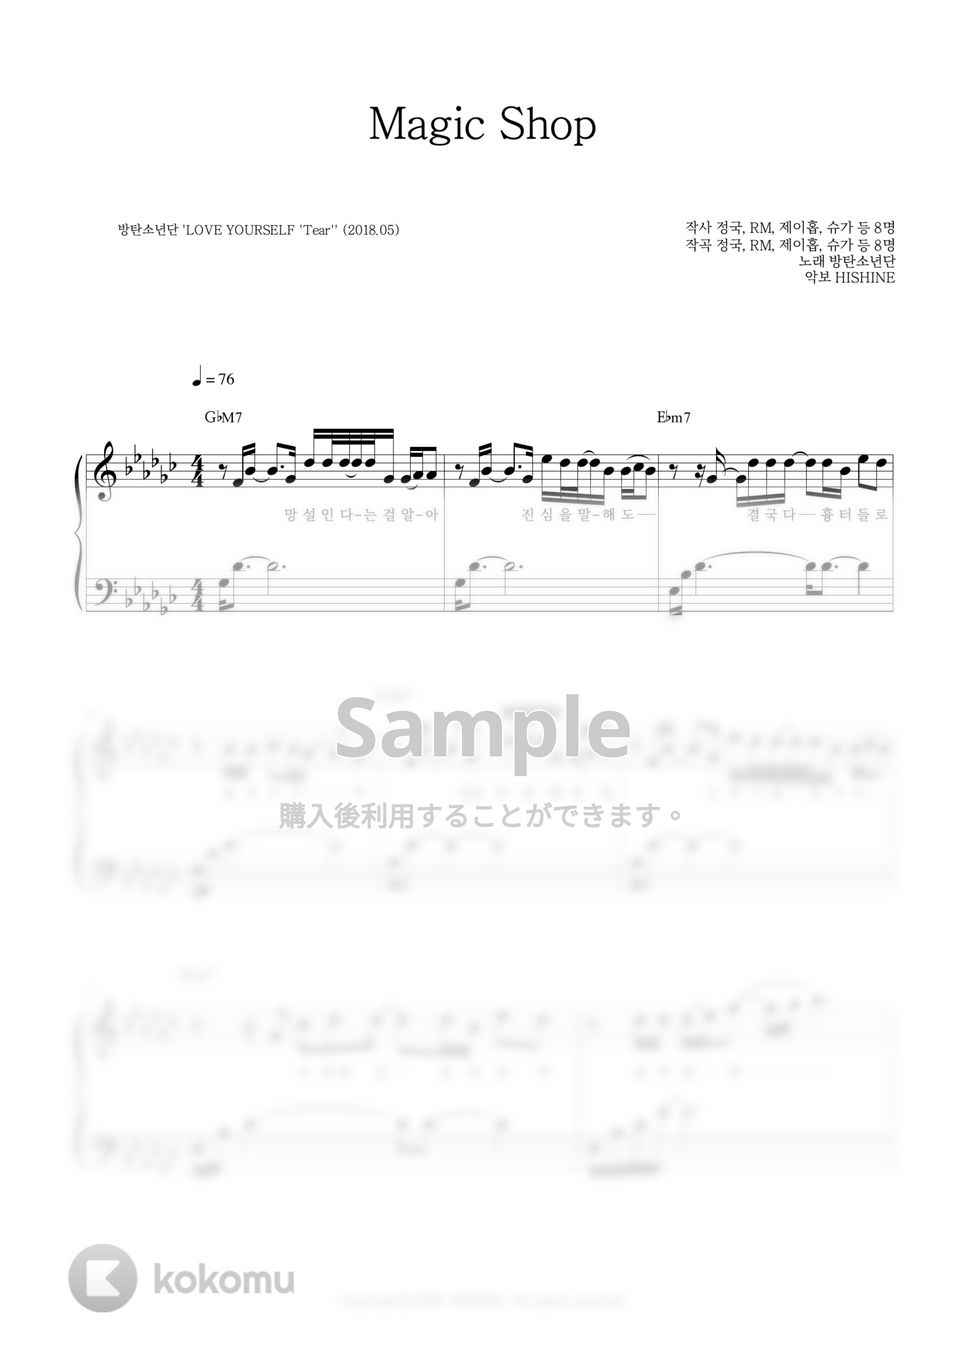 防弾少年団(BTS) - MAGIC SHOP by HISHINE